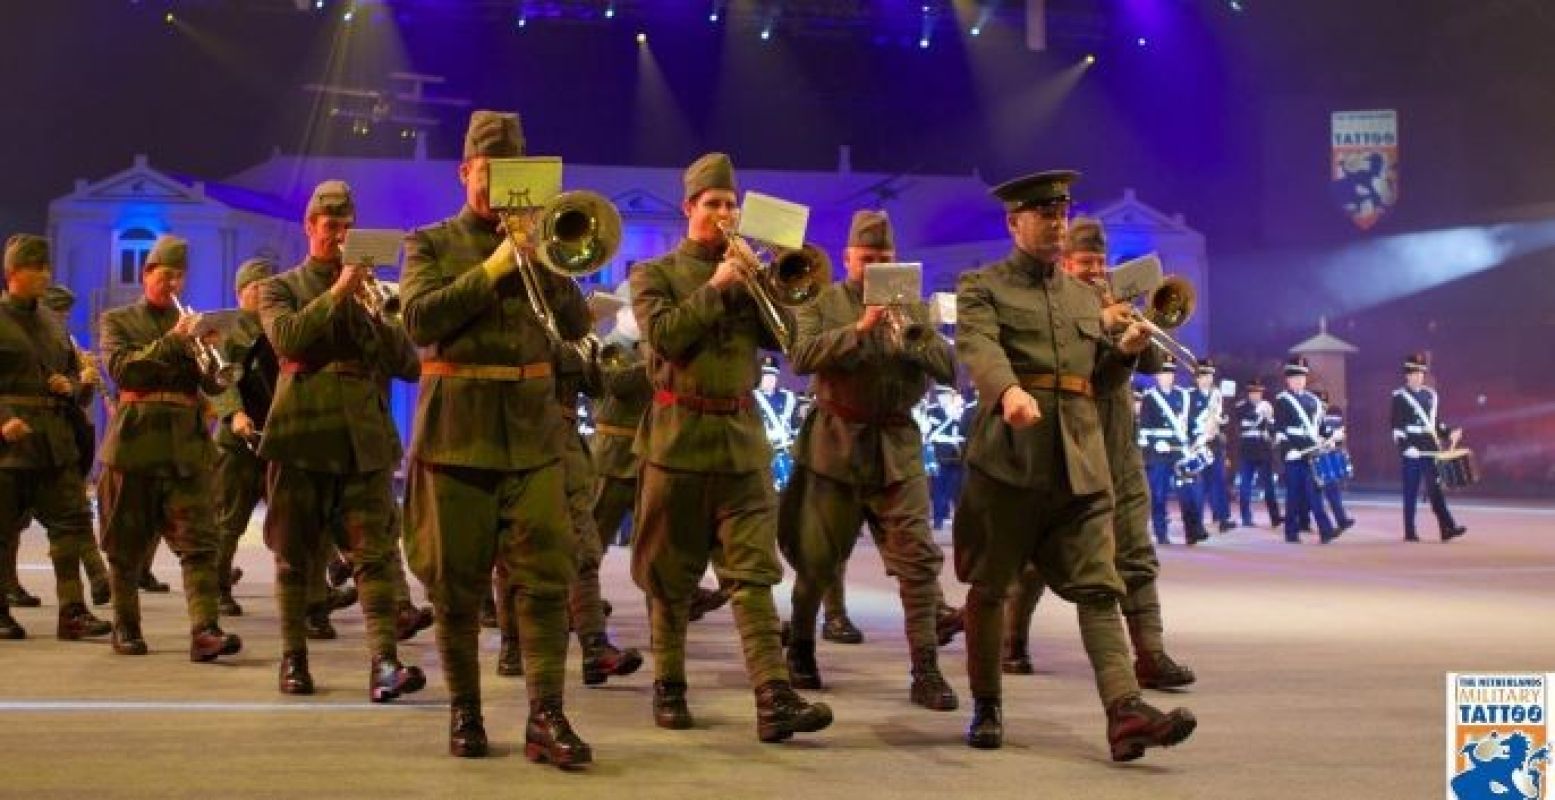 Orkesten uit binnen- en buitenland geven acte de présence tijdens de militaire muziekshow. Foto: Nationale Taptoe